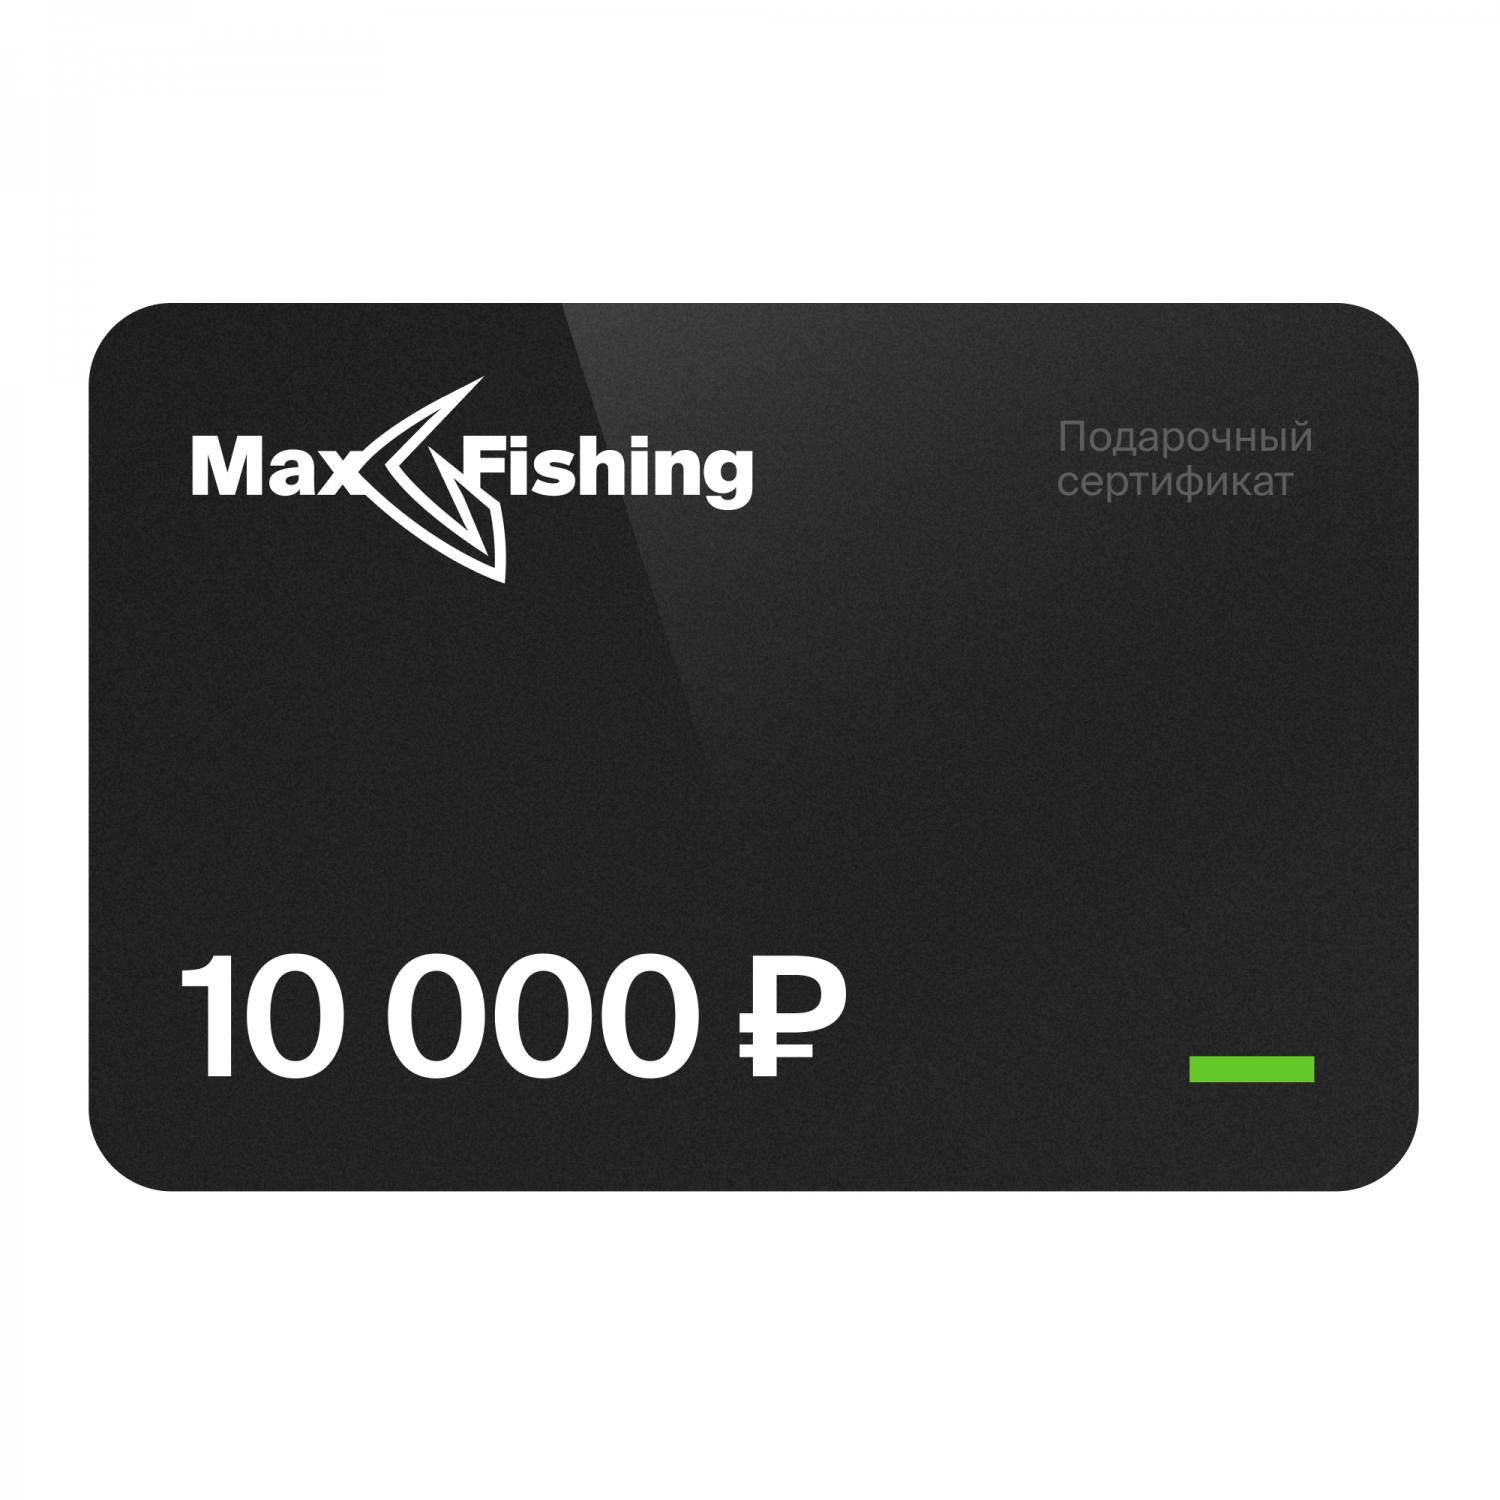 Подарочный сертификат MaxFishing 10 000 ₽ подарочный сертификат maxfishing 15